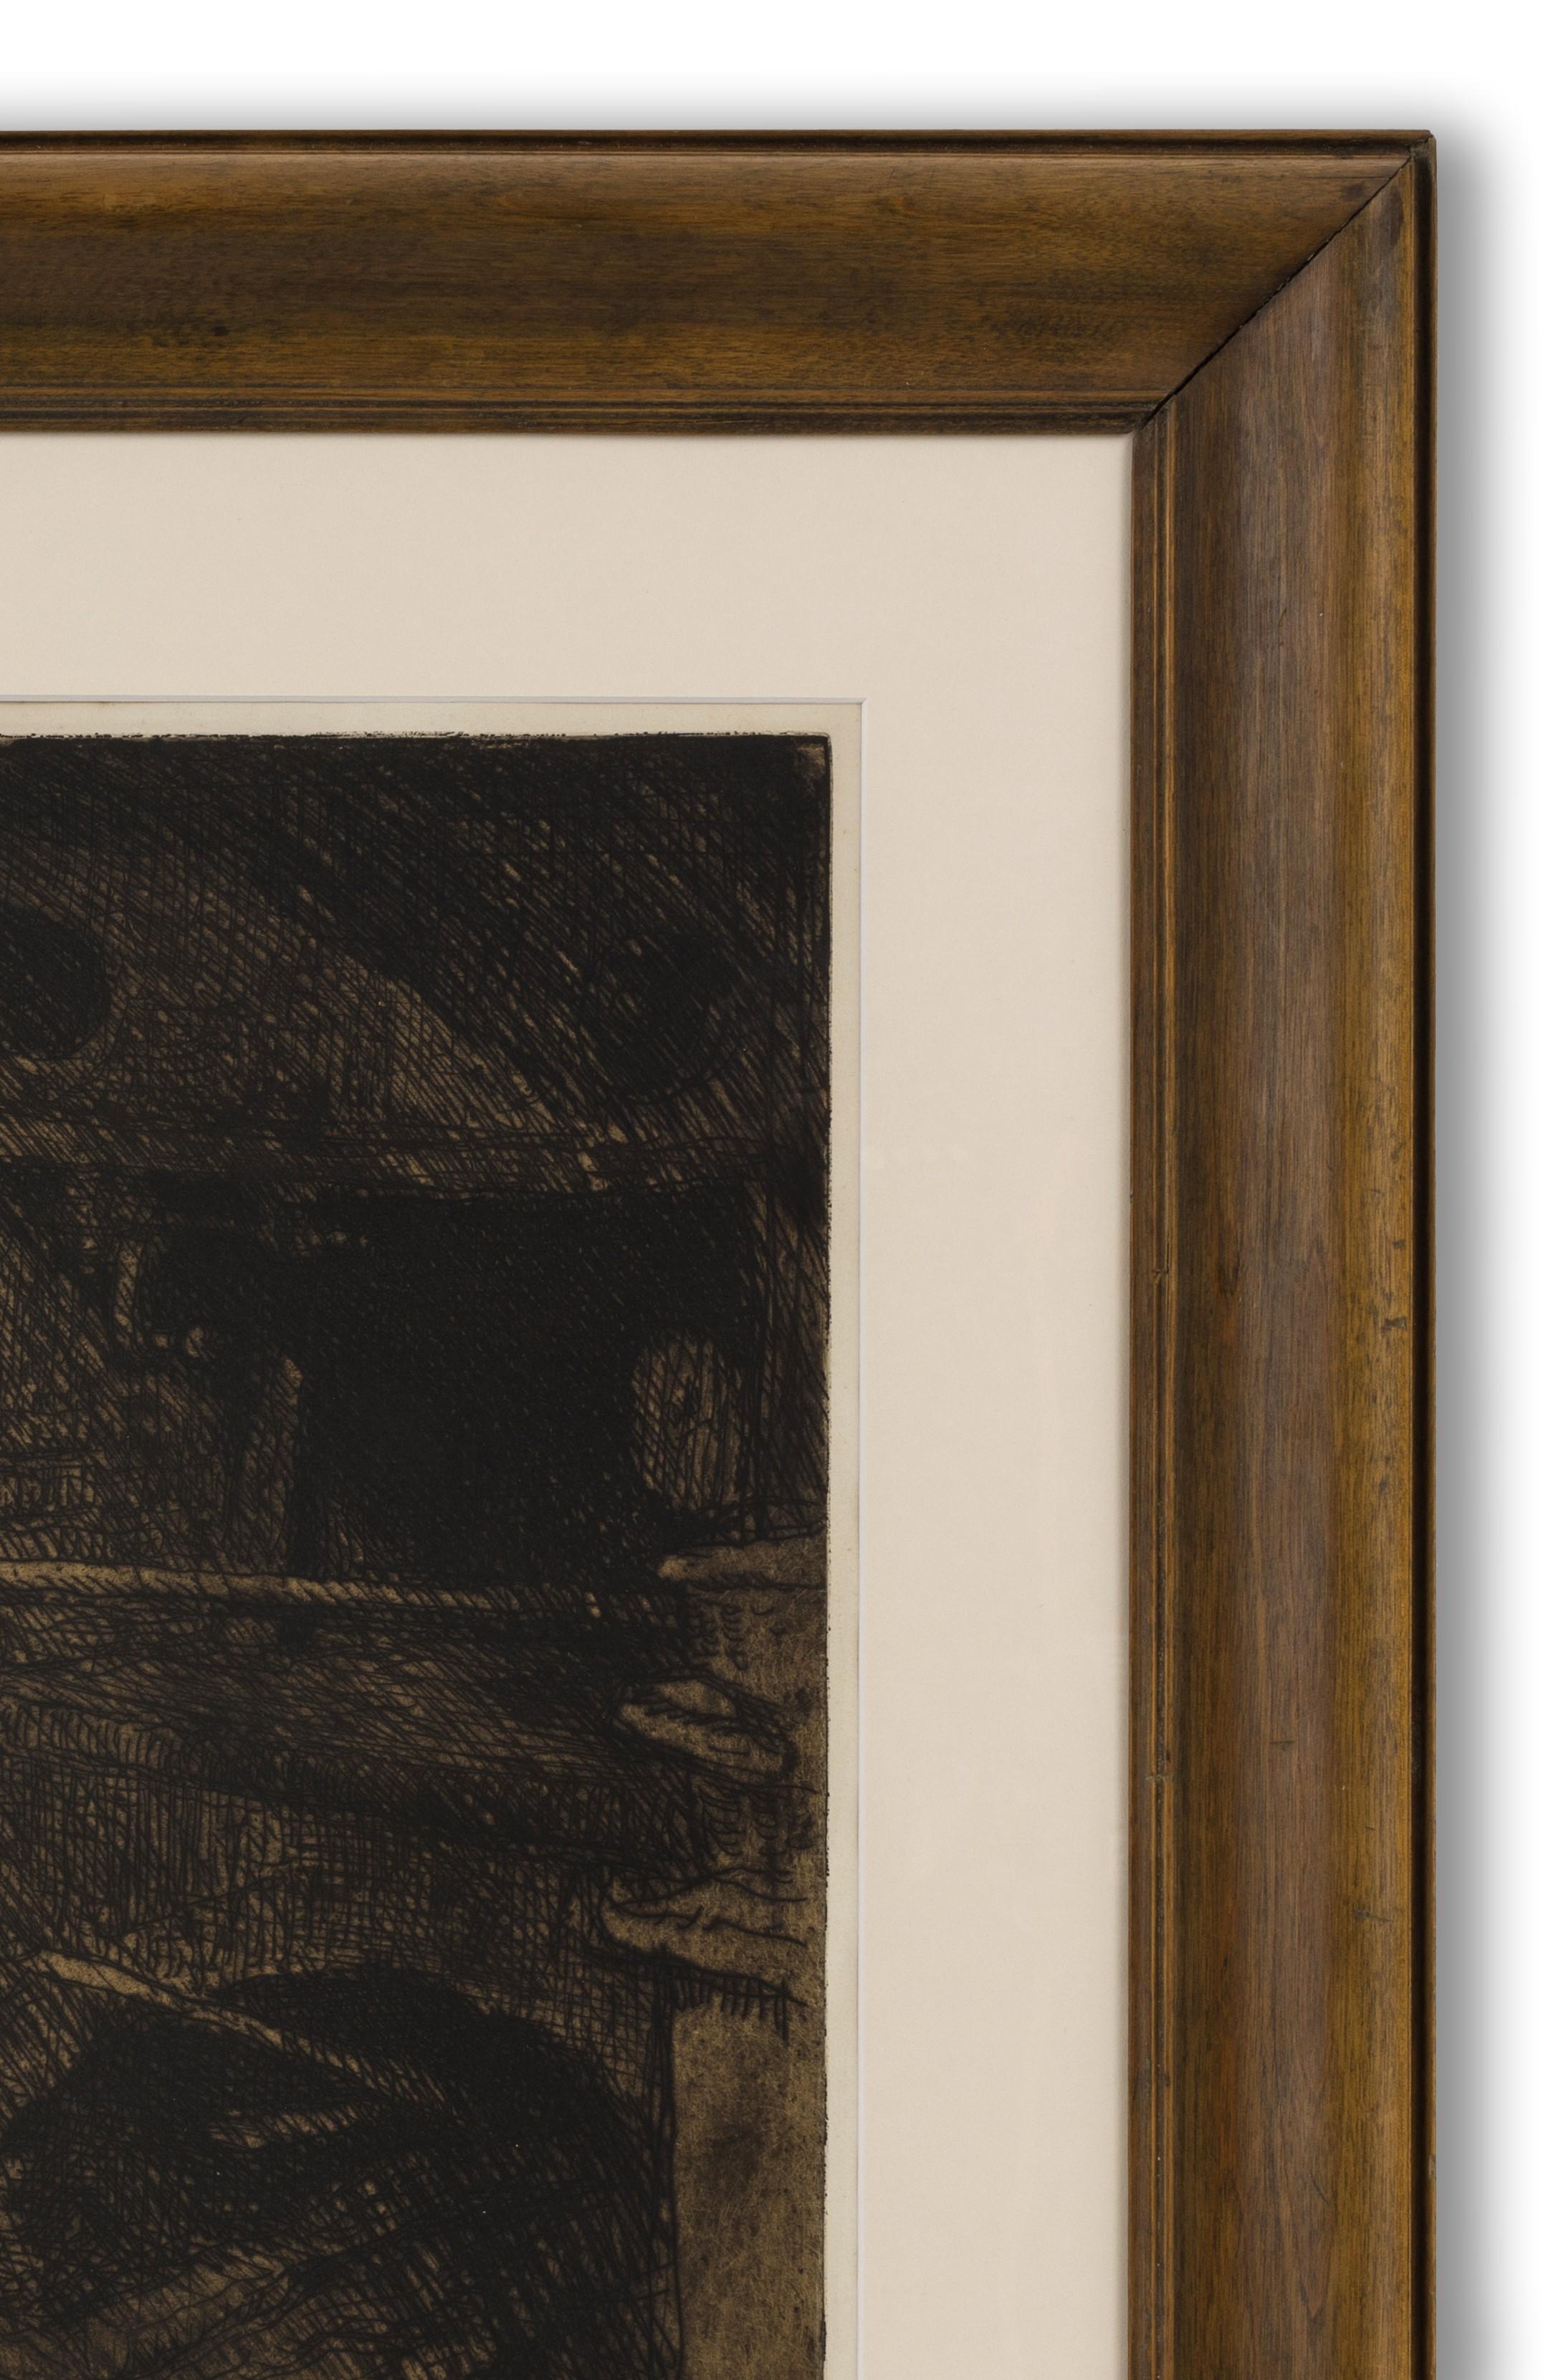 Gravure, signée au crayon (en bas à droite), 51 cm x 64,5 cm (format de la plaque) (81 cm x 94 cm encadré). 

Peintre, graveur, dessinateur et designer britannique, fils d'un architecte gallois spécialisé dans le mobilier d'église, qui travaillait